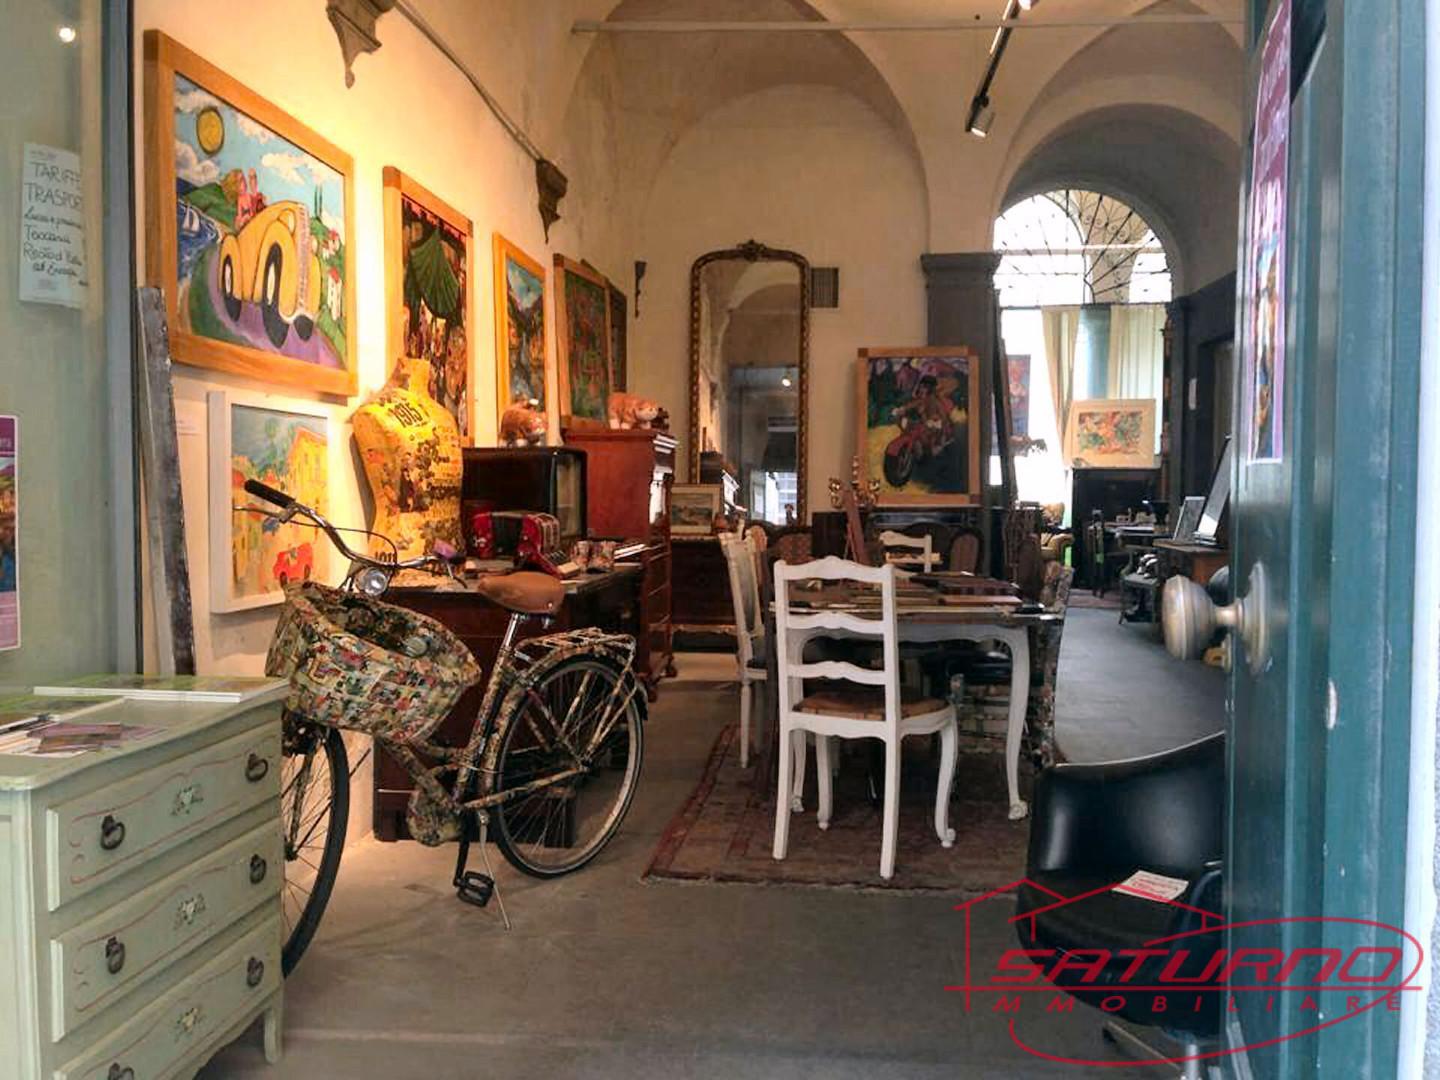 Locale commerciale in vendita, Lucca centro storico